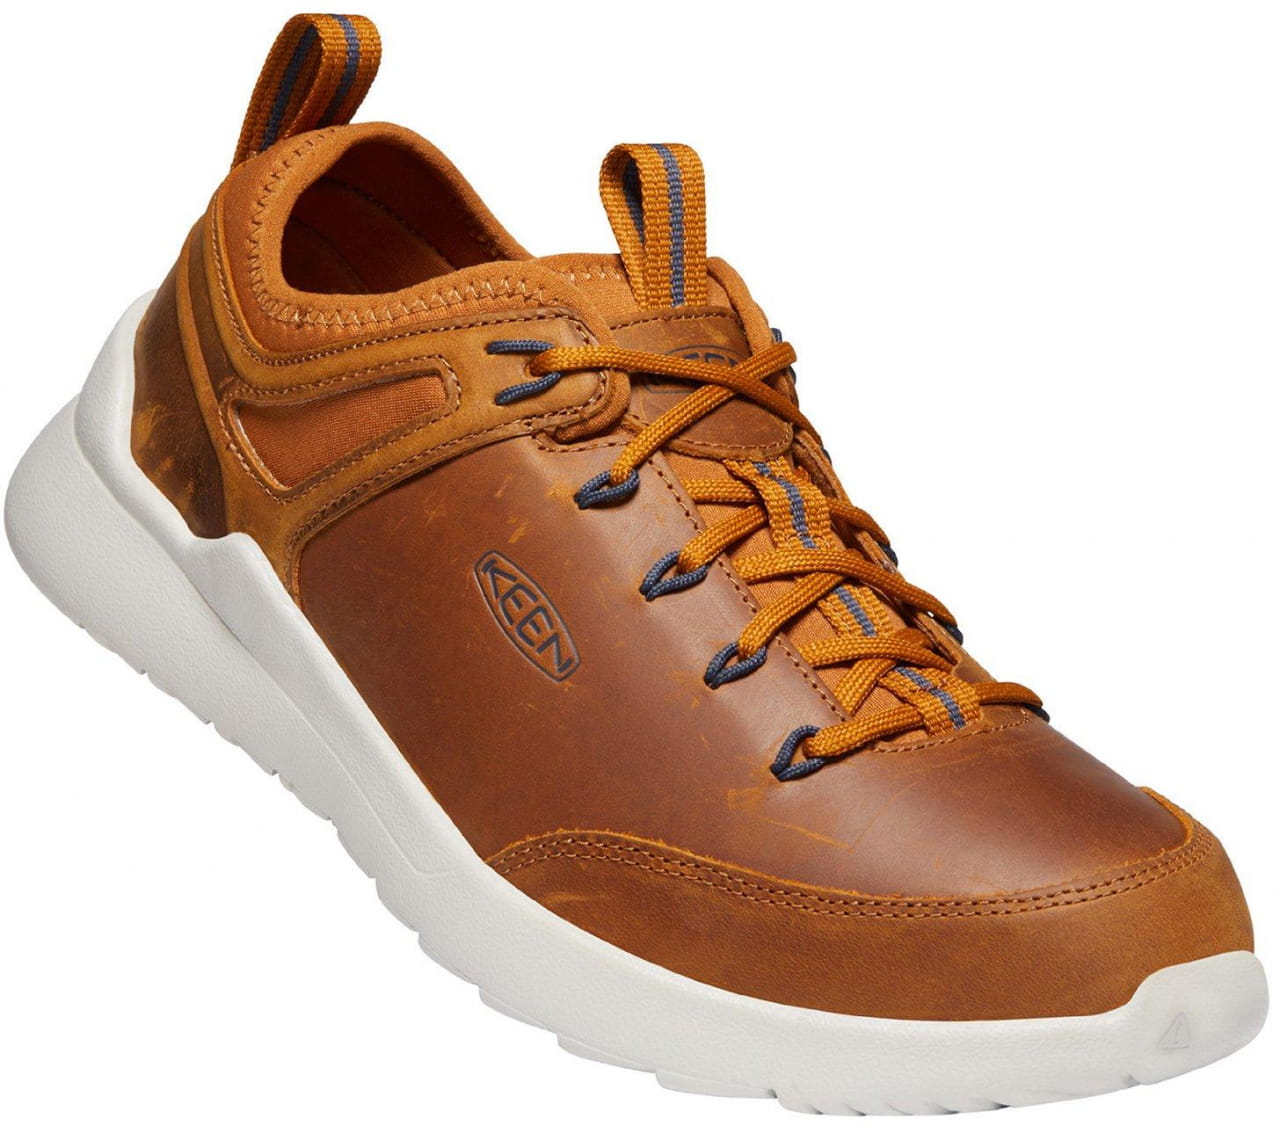 Freizeit/Fashion-Schuhe Keen Highland Sneaker M